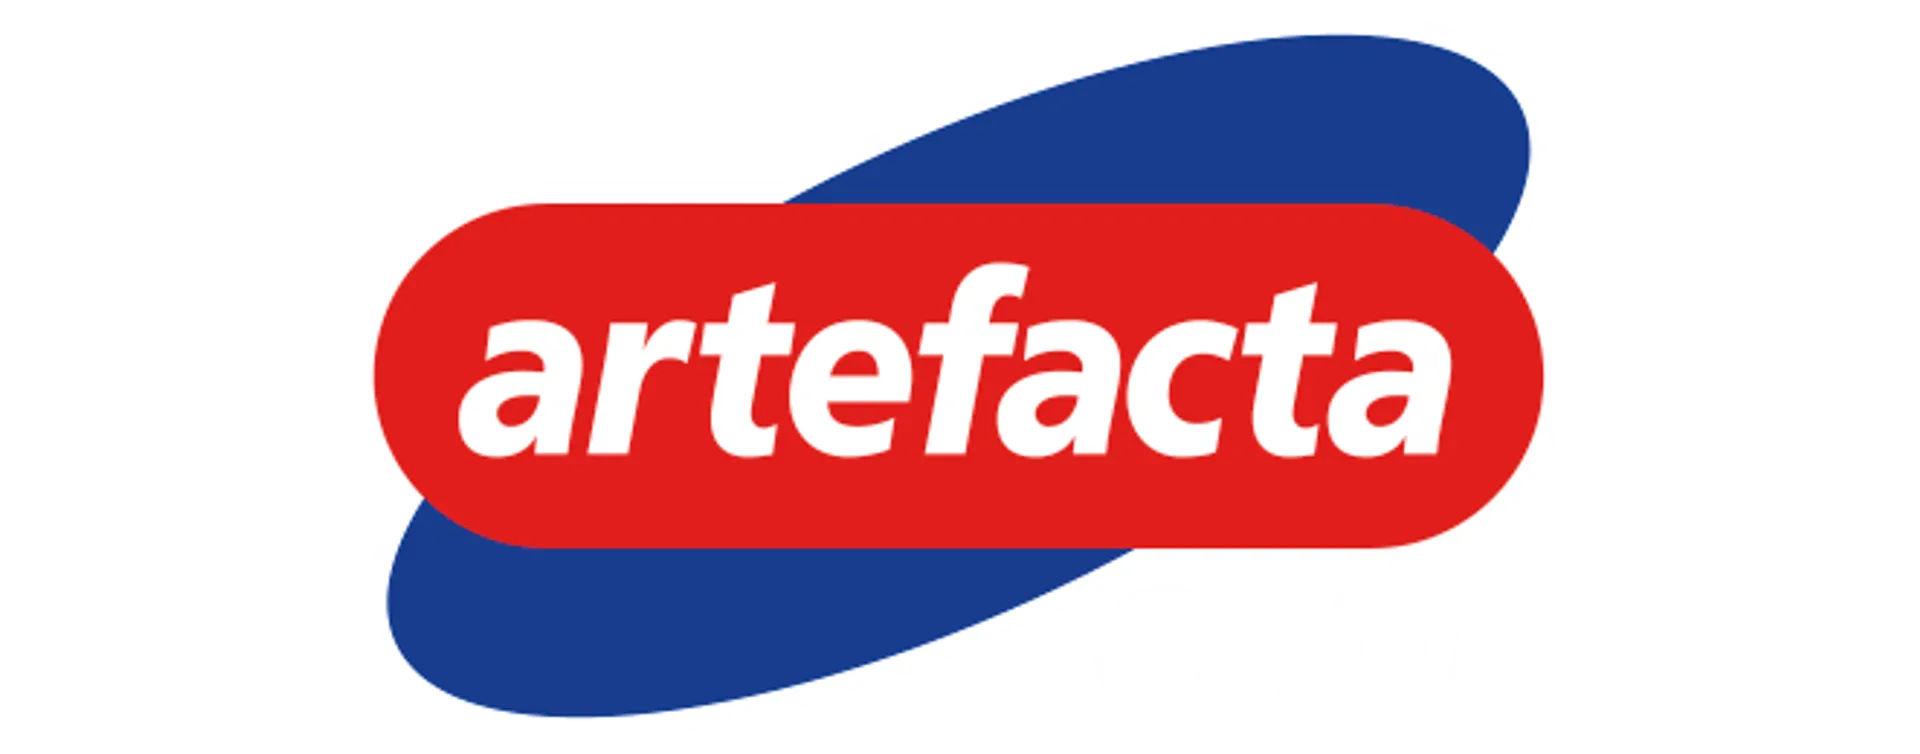 ARTEFACTA logo